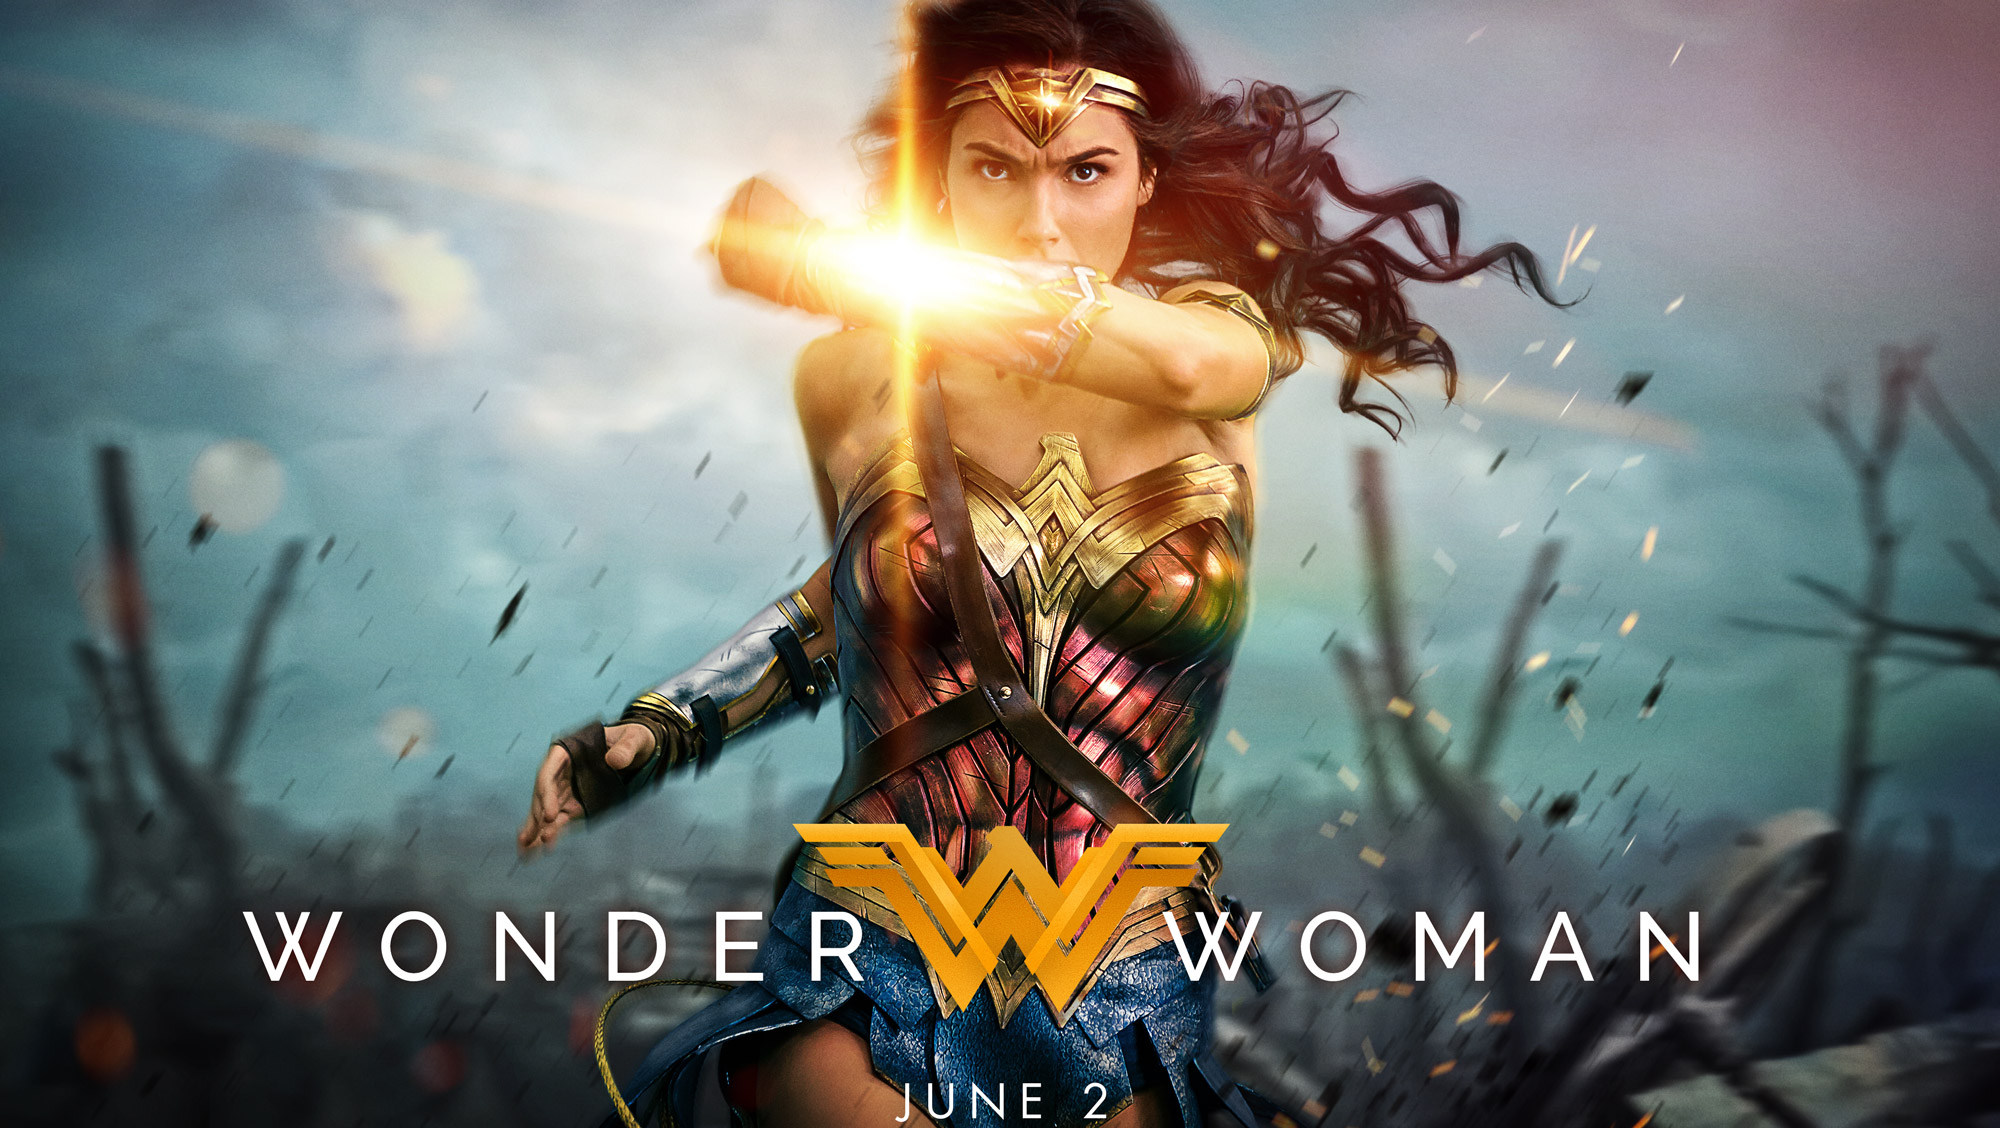 Wonder Woman Ratings and Reiews